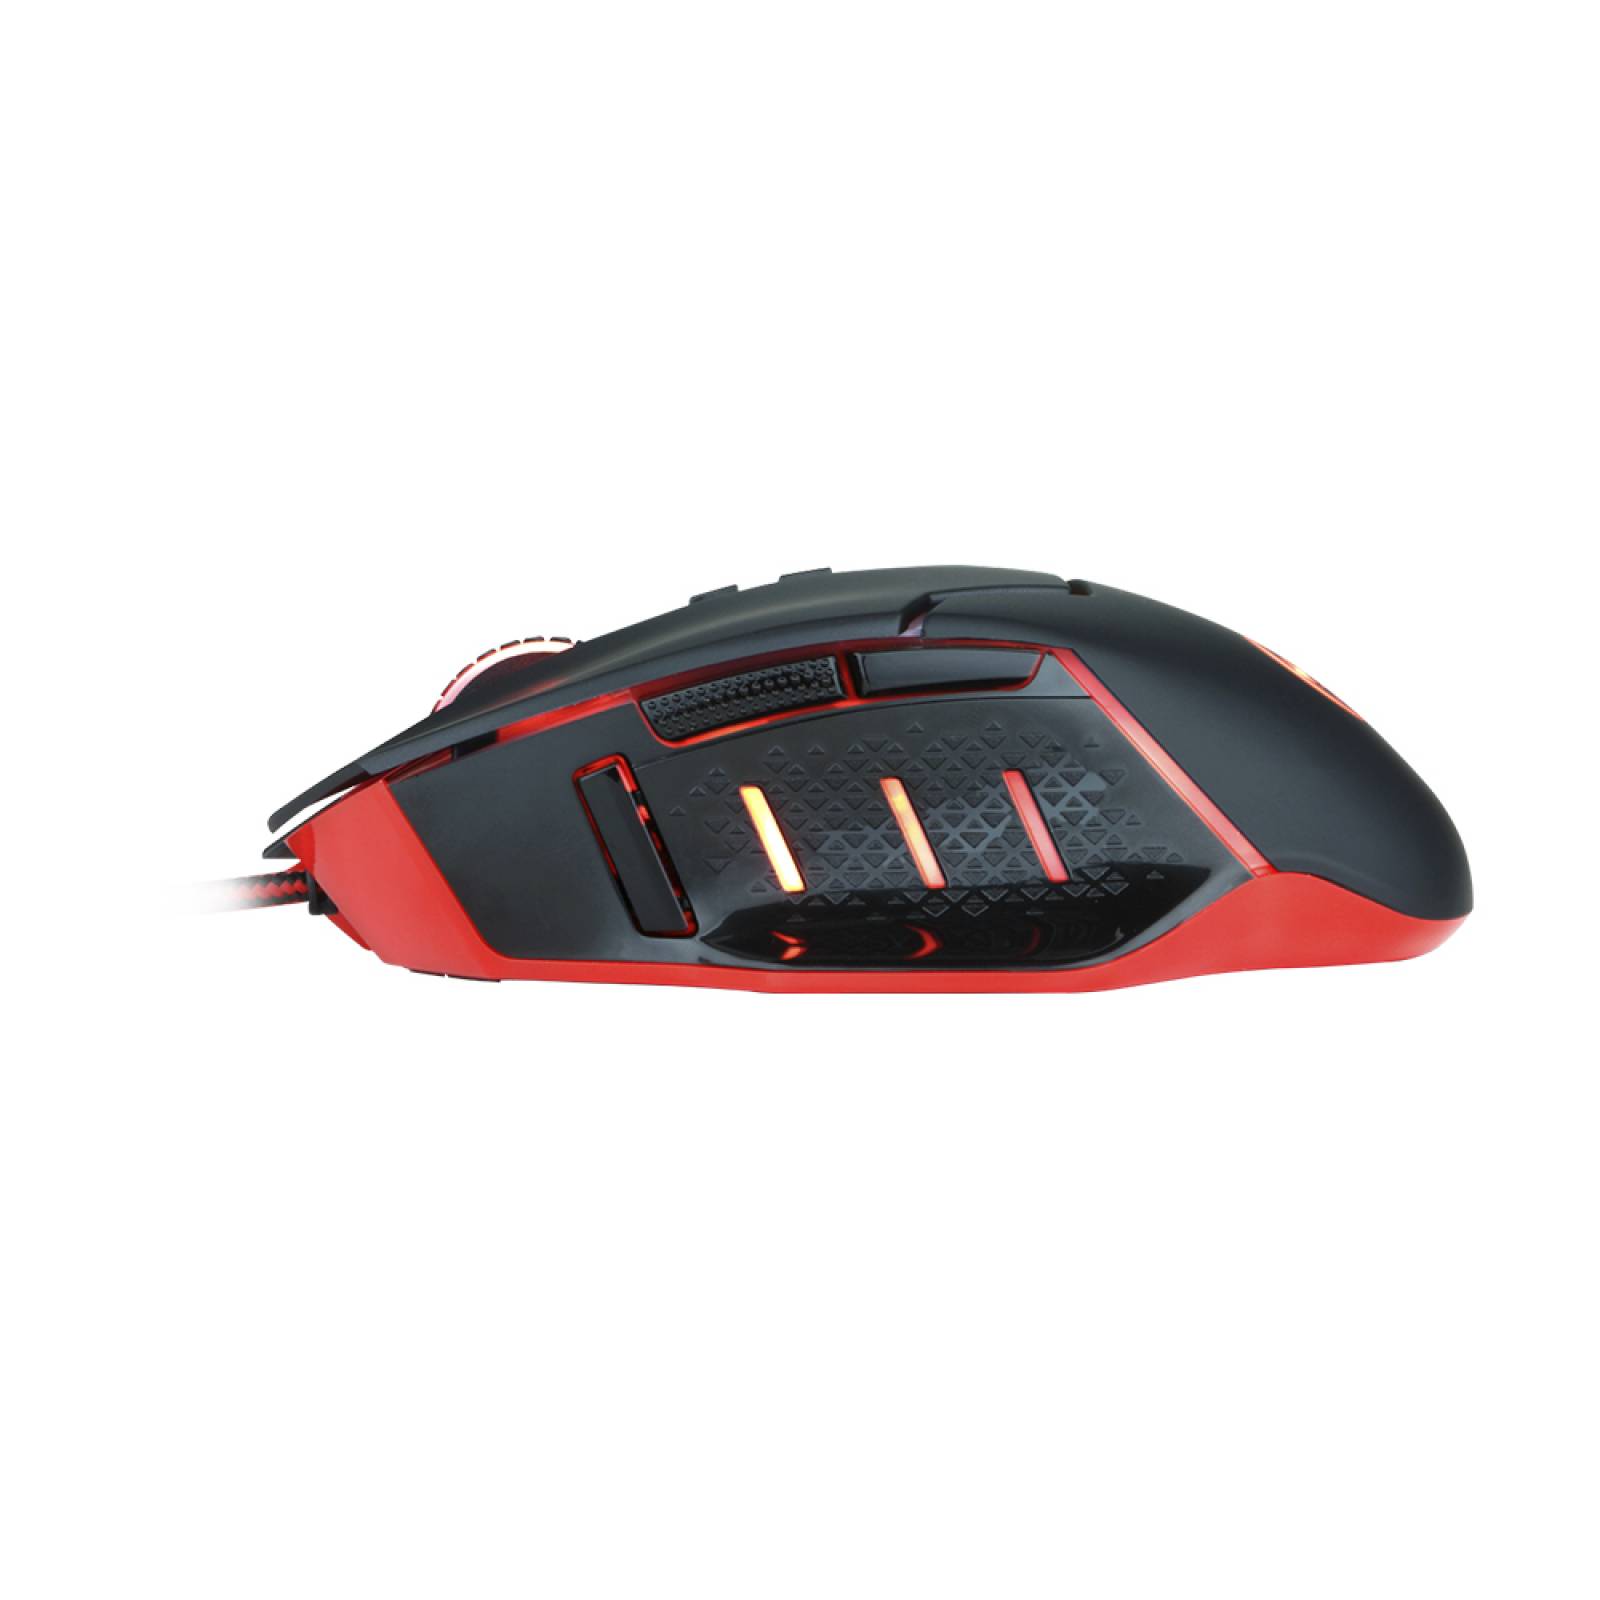 Redragon Gaming Mouse Inspirit M907